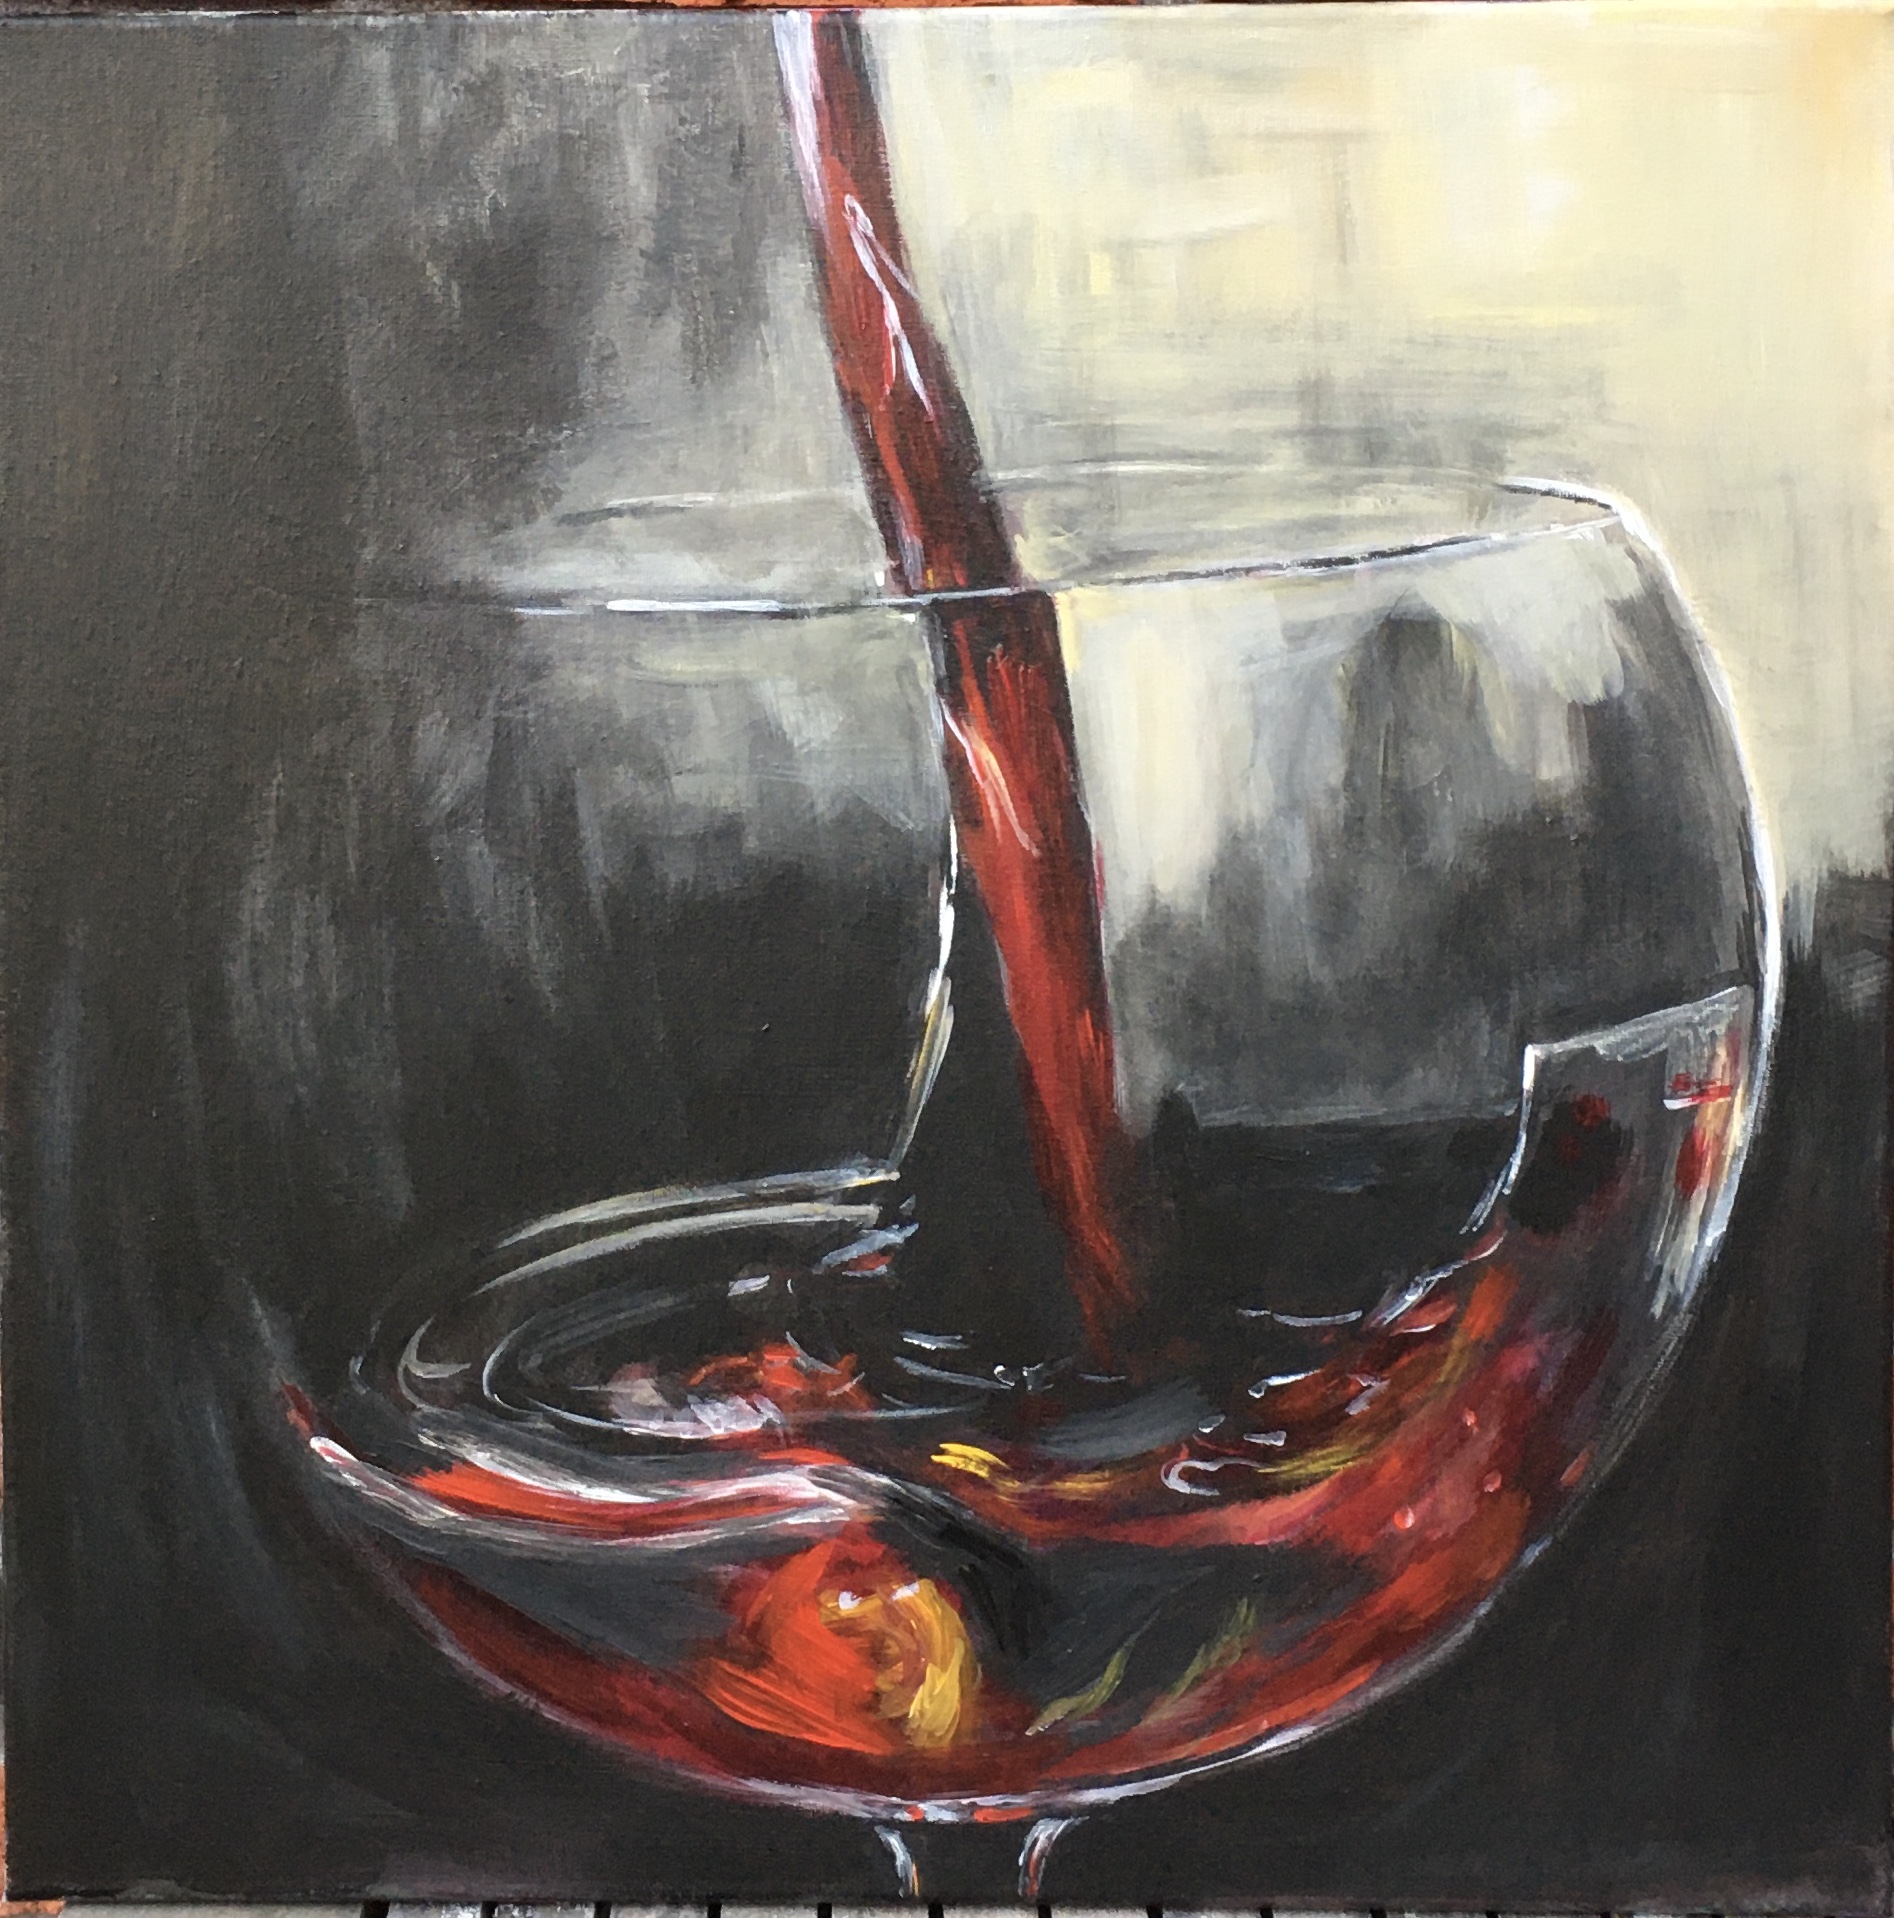 Wijnglas met rode wijn waar veel beweging in zit.